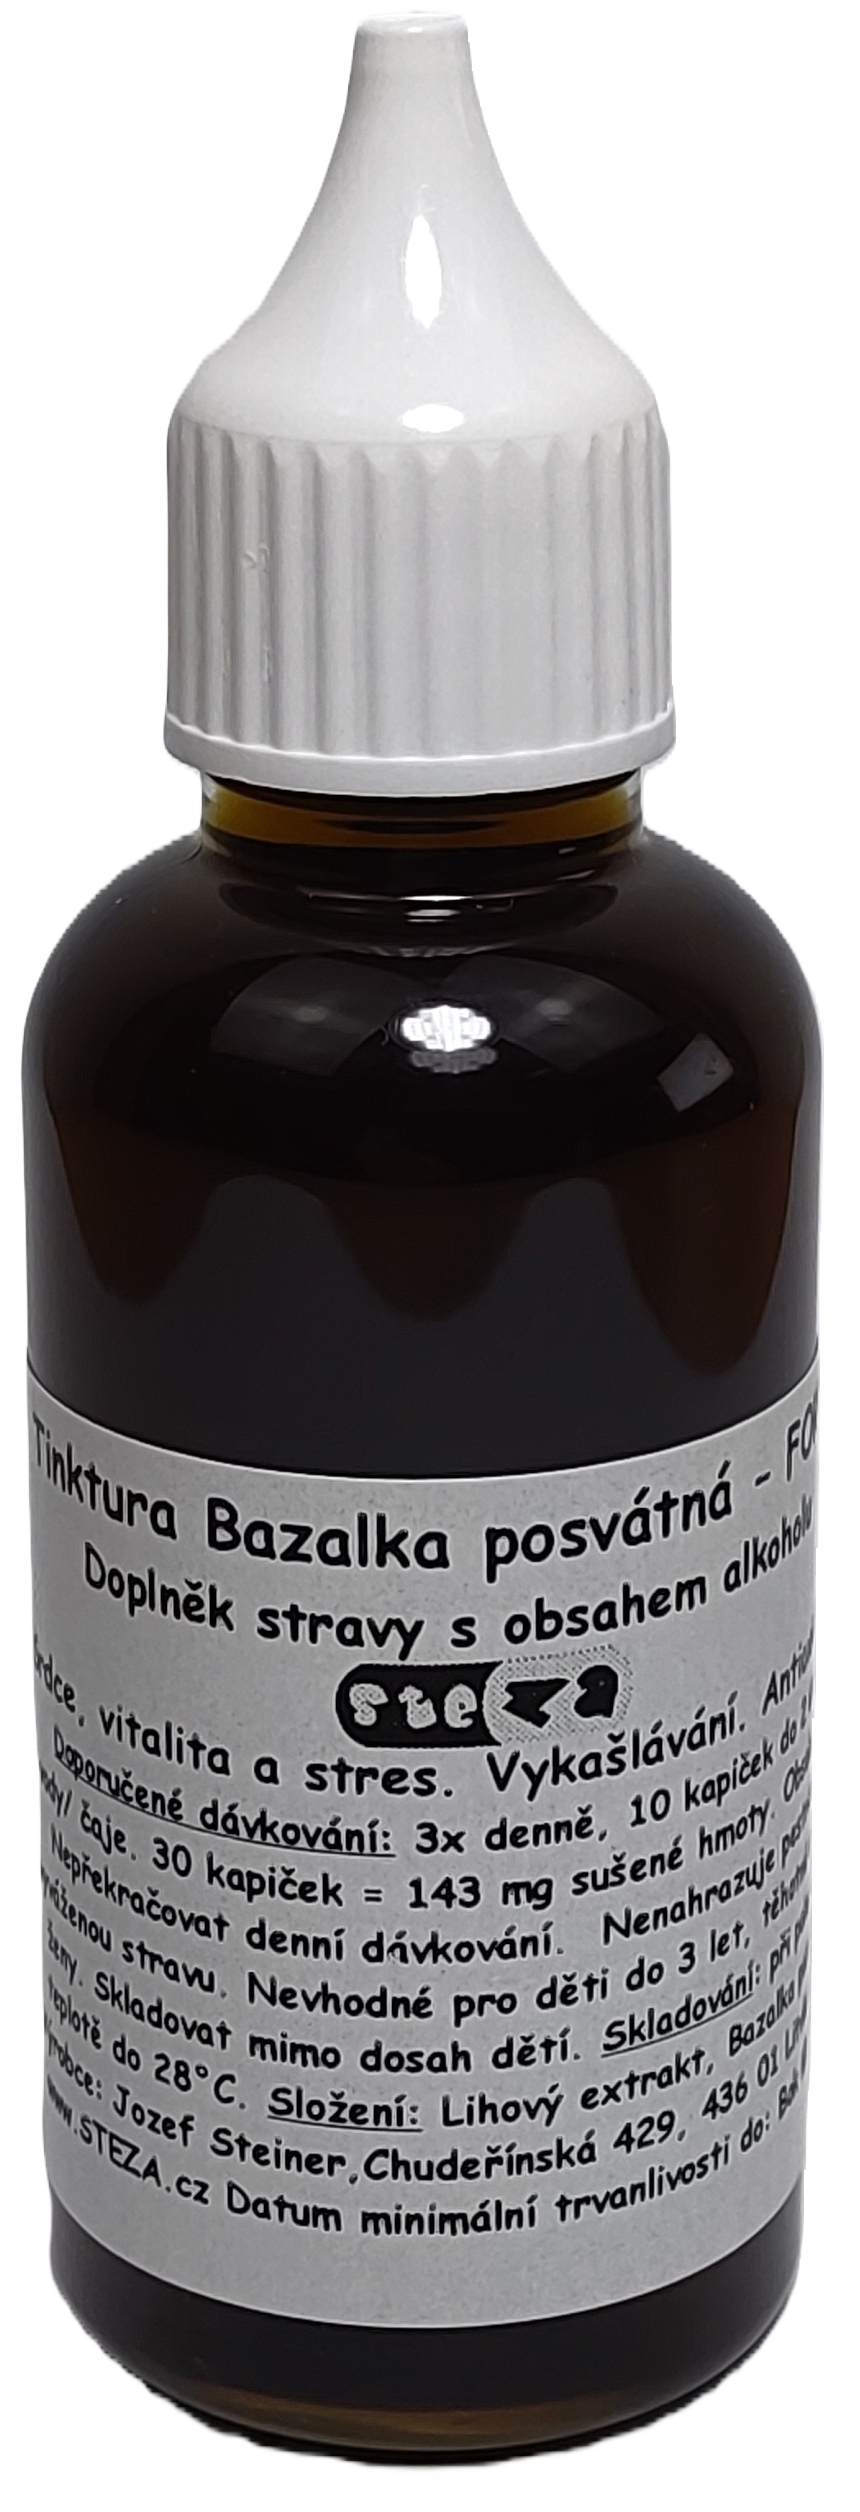 STEZA - Tinktura Bazalka posvátná - FORTE 5x 50 ml. (Tinktura Bazalka posvátná )